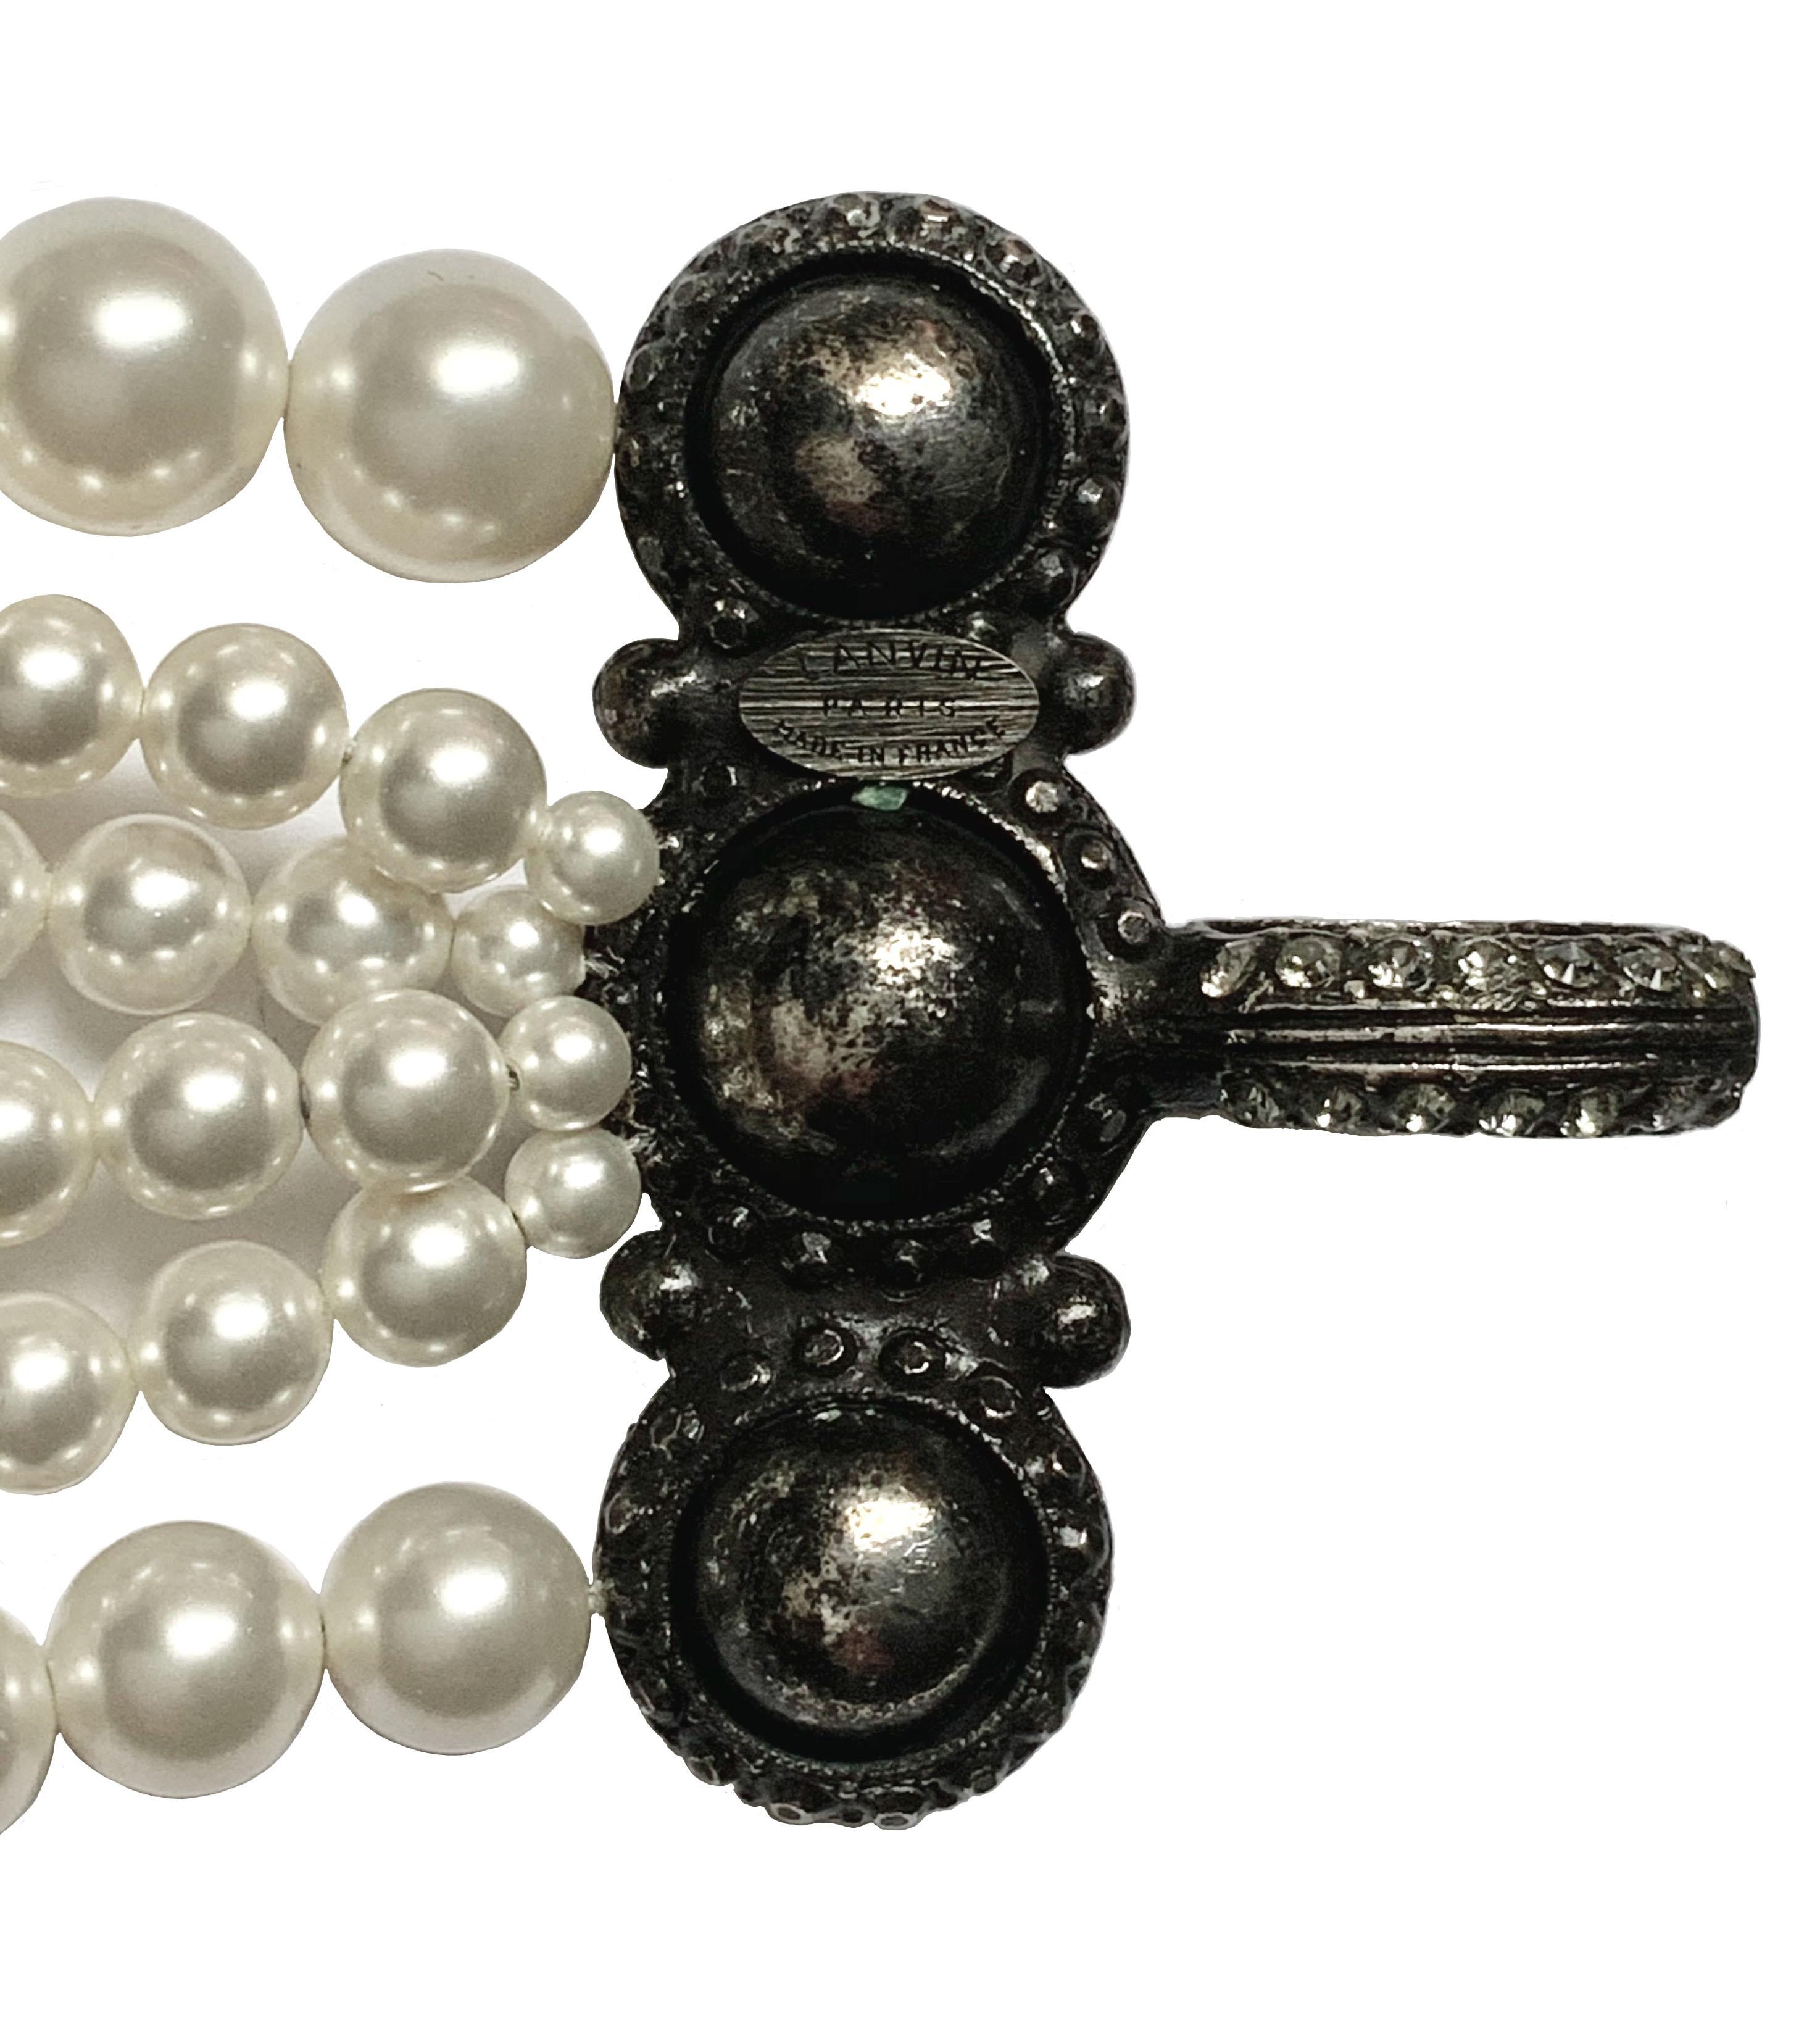 multi strand pearl necklace